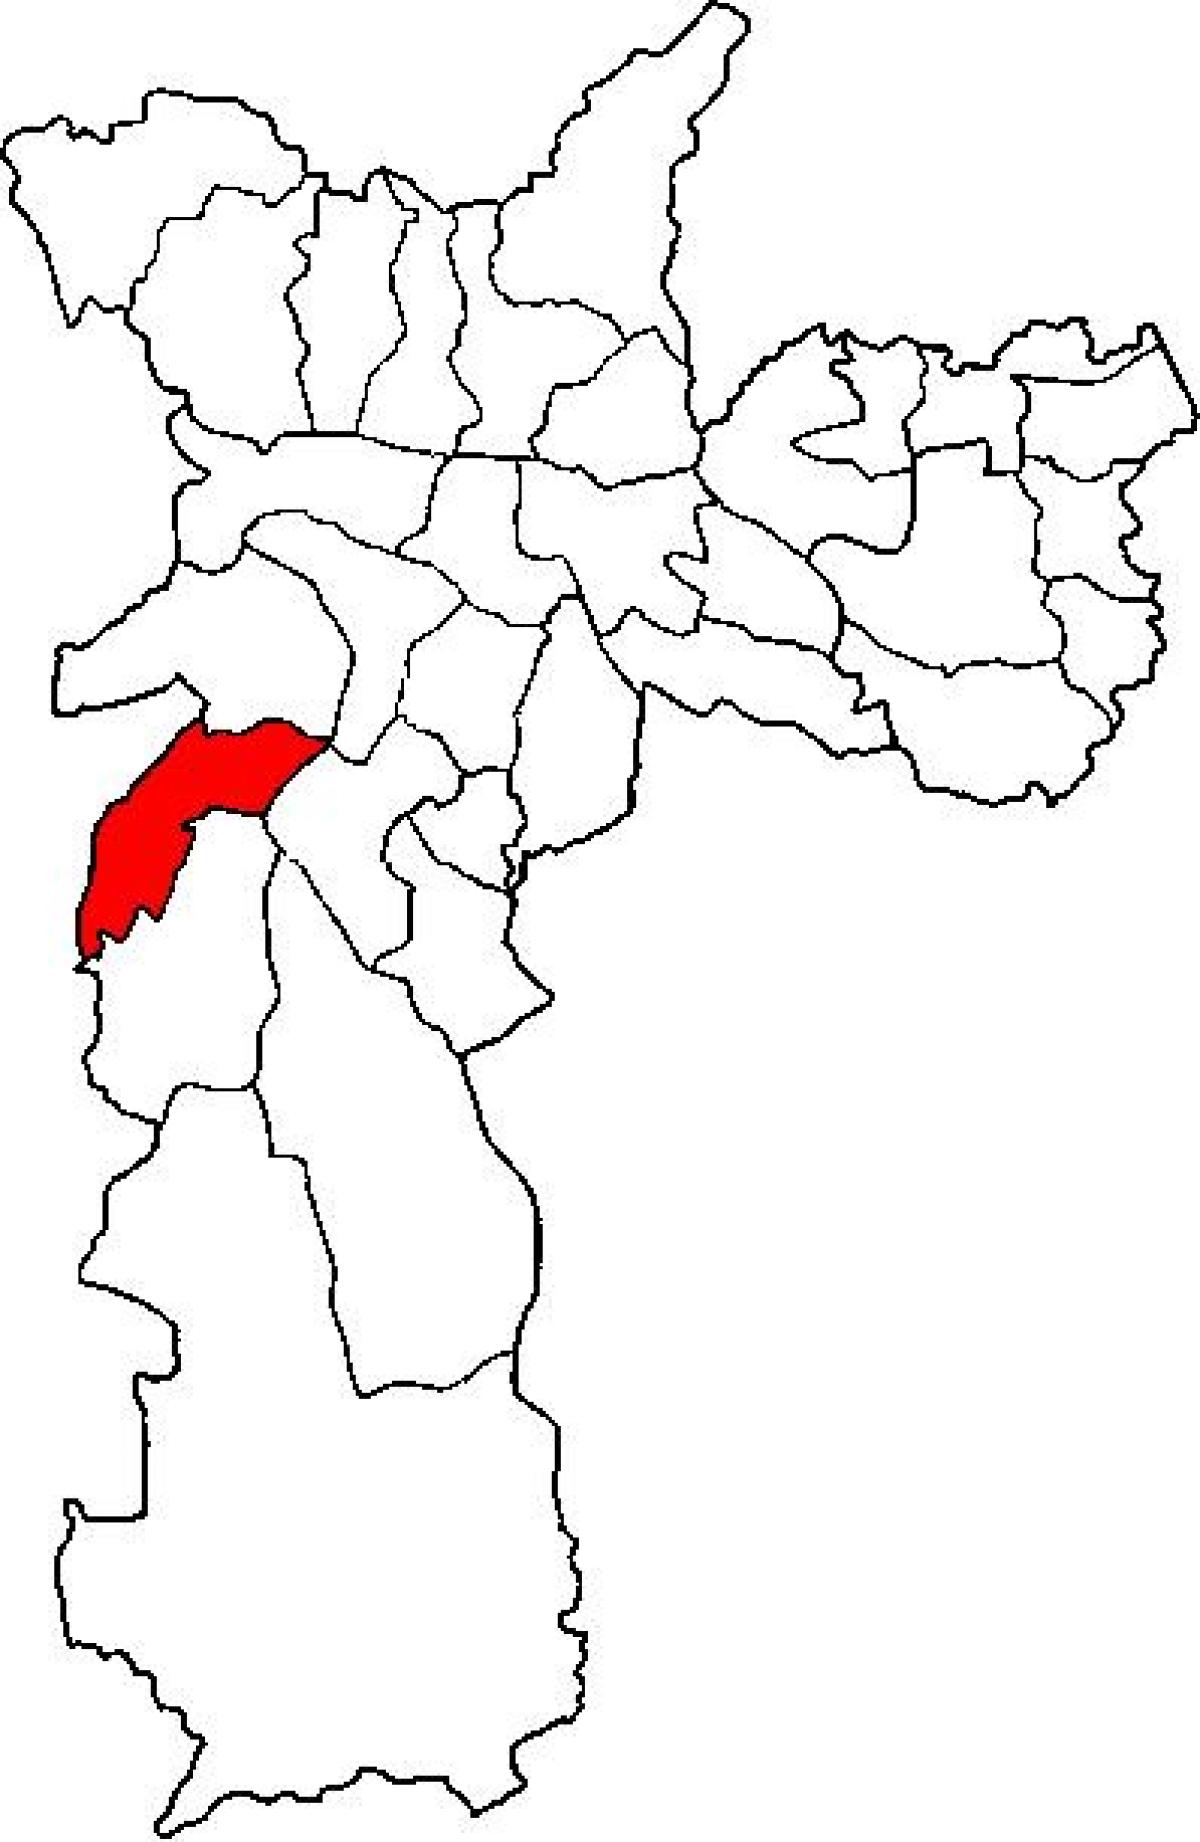 خريطة كامبو ليمبو الفرعية في محافظة ساو باولو